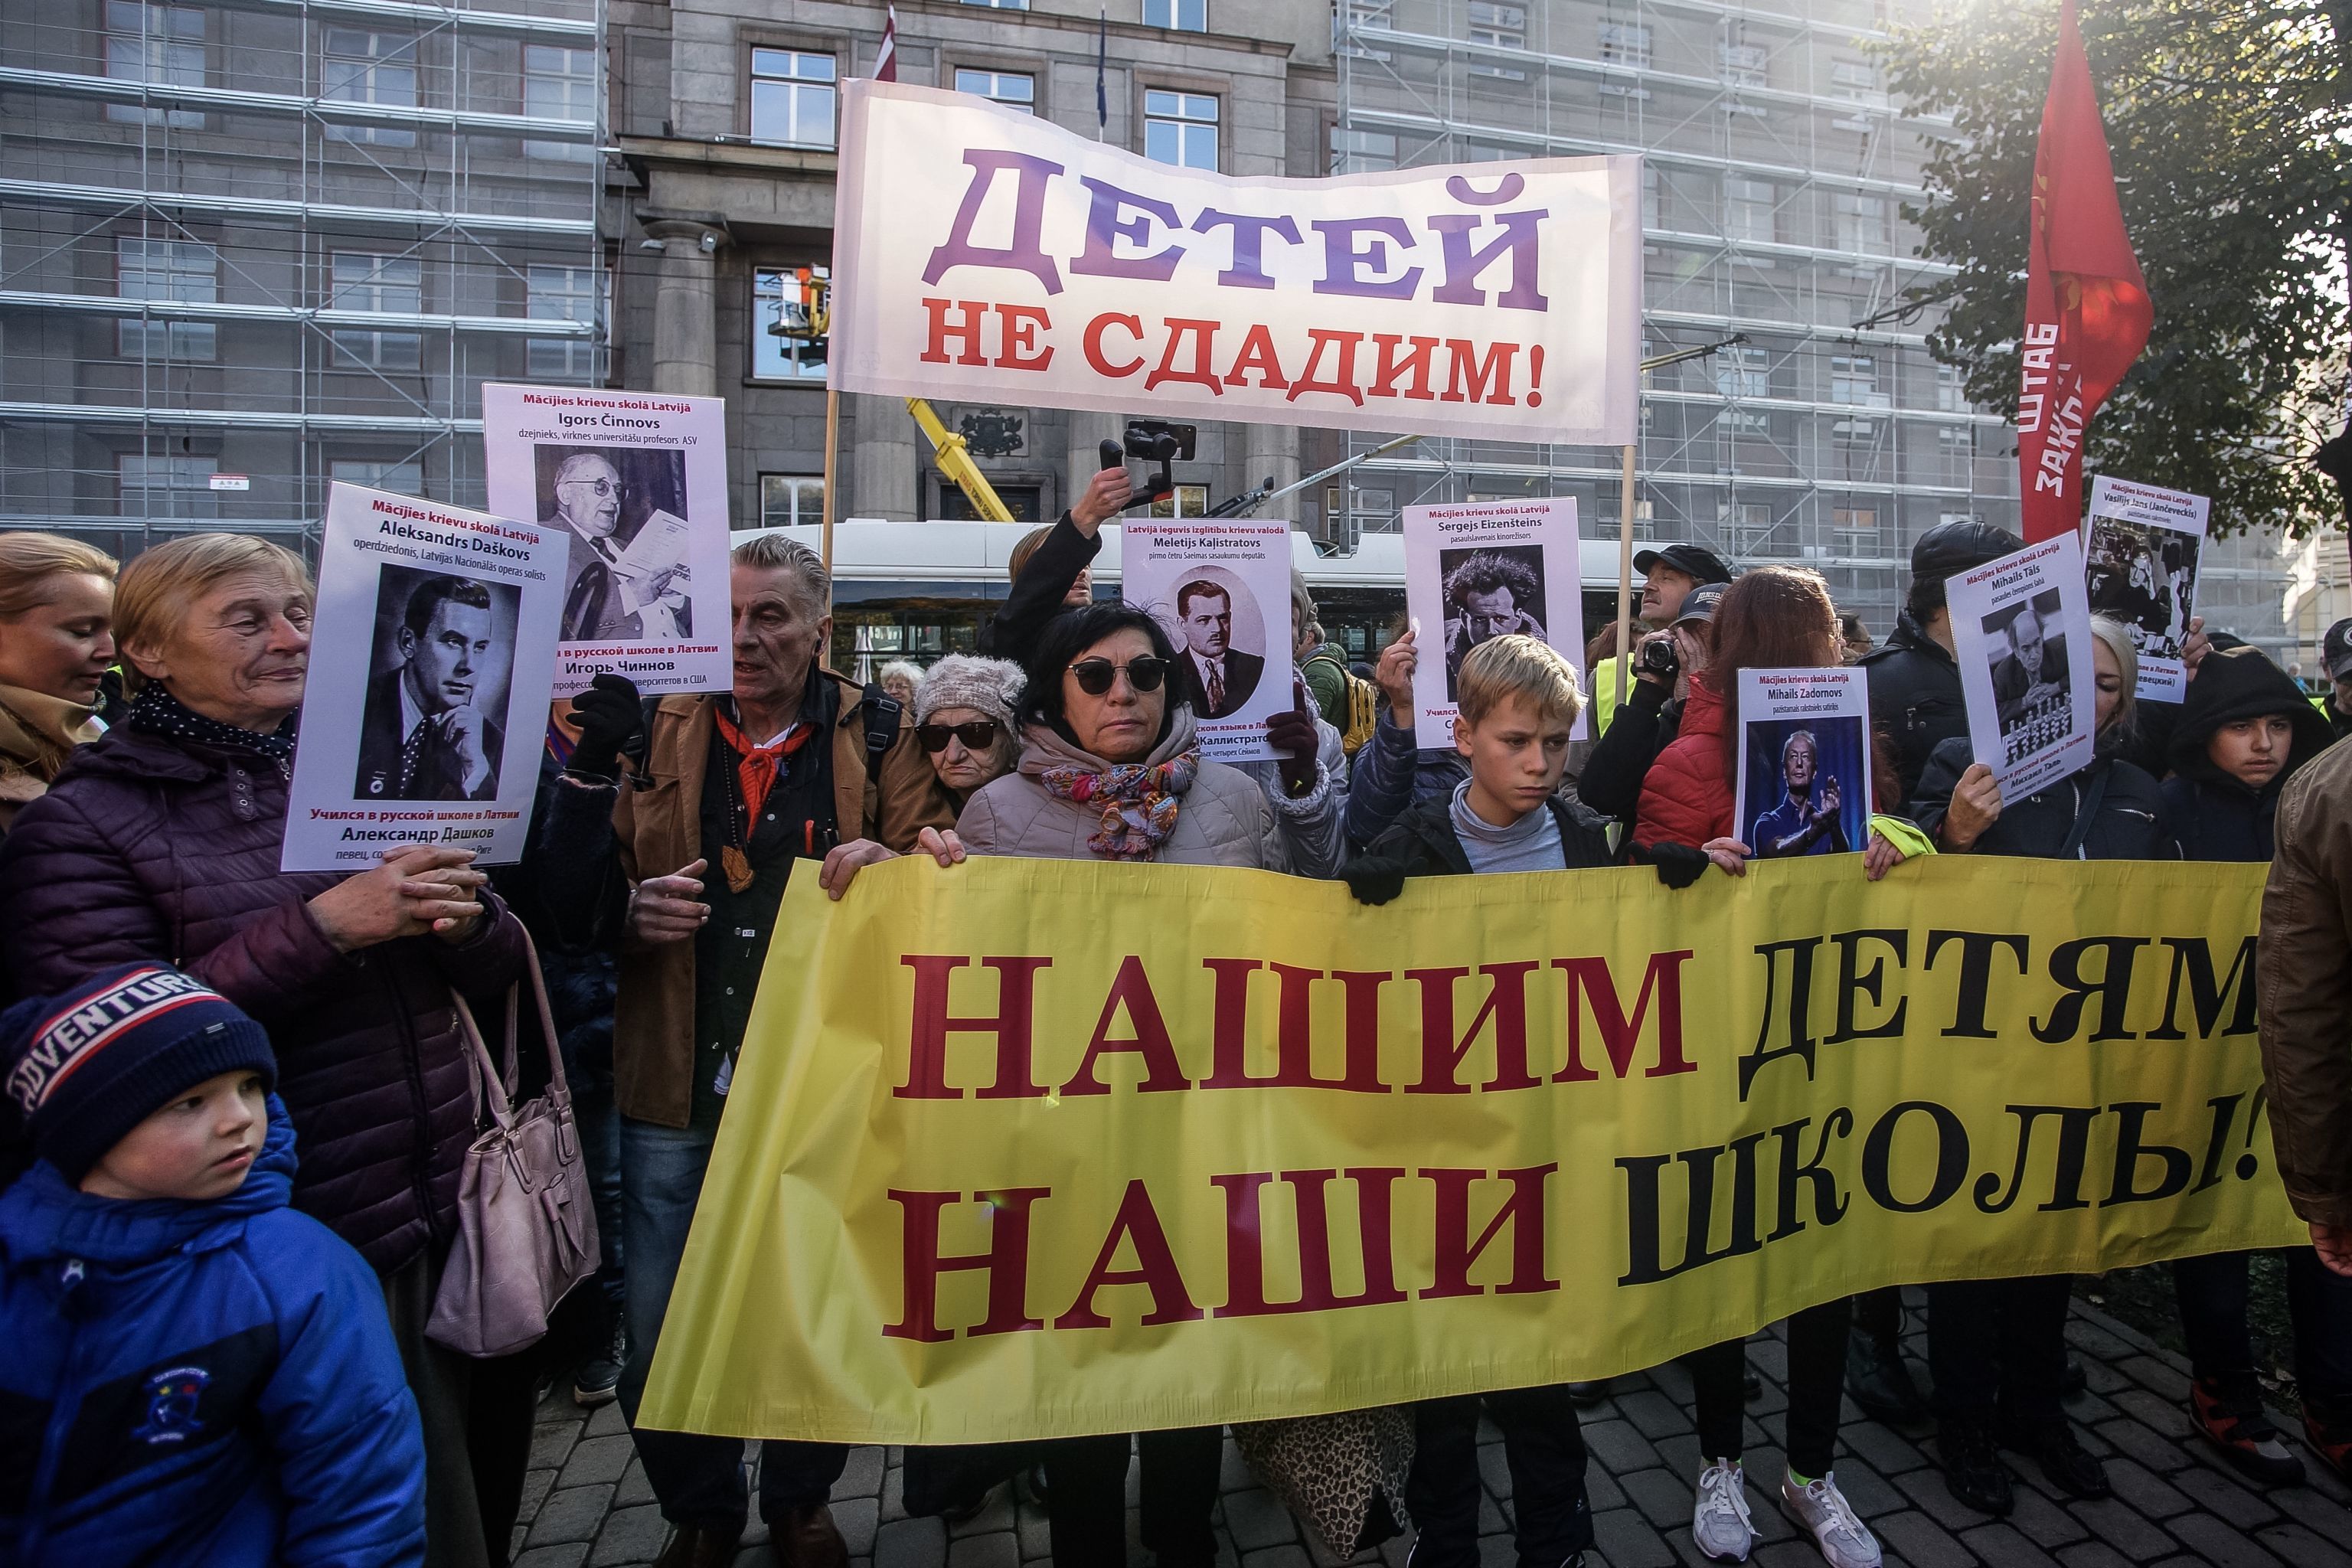 Митинг в защиту образования на русском языке, 5 октября 2019